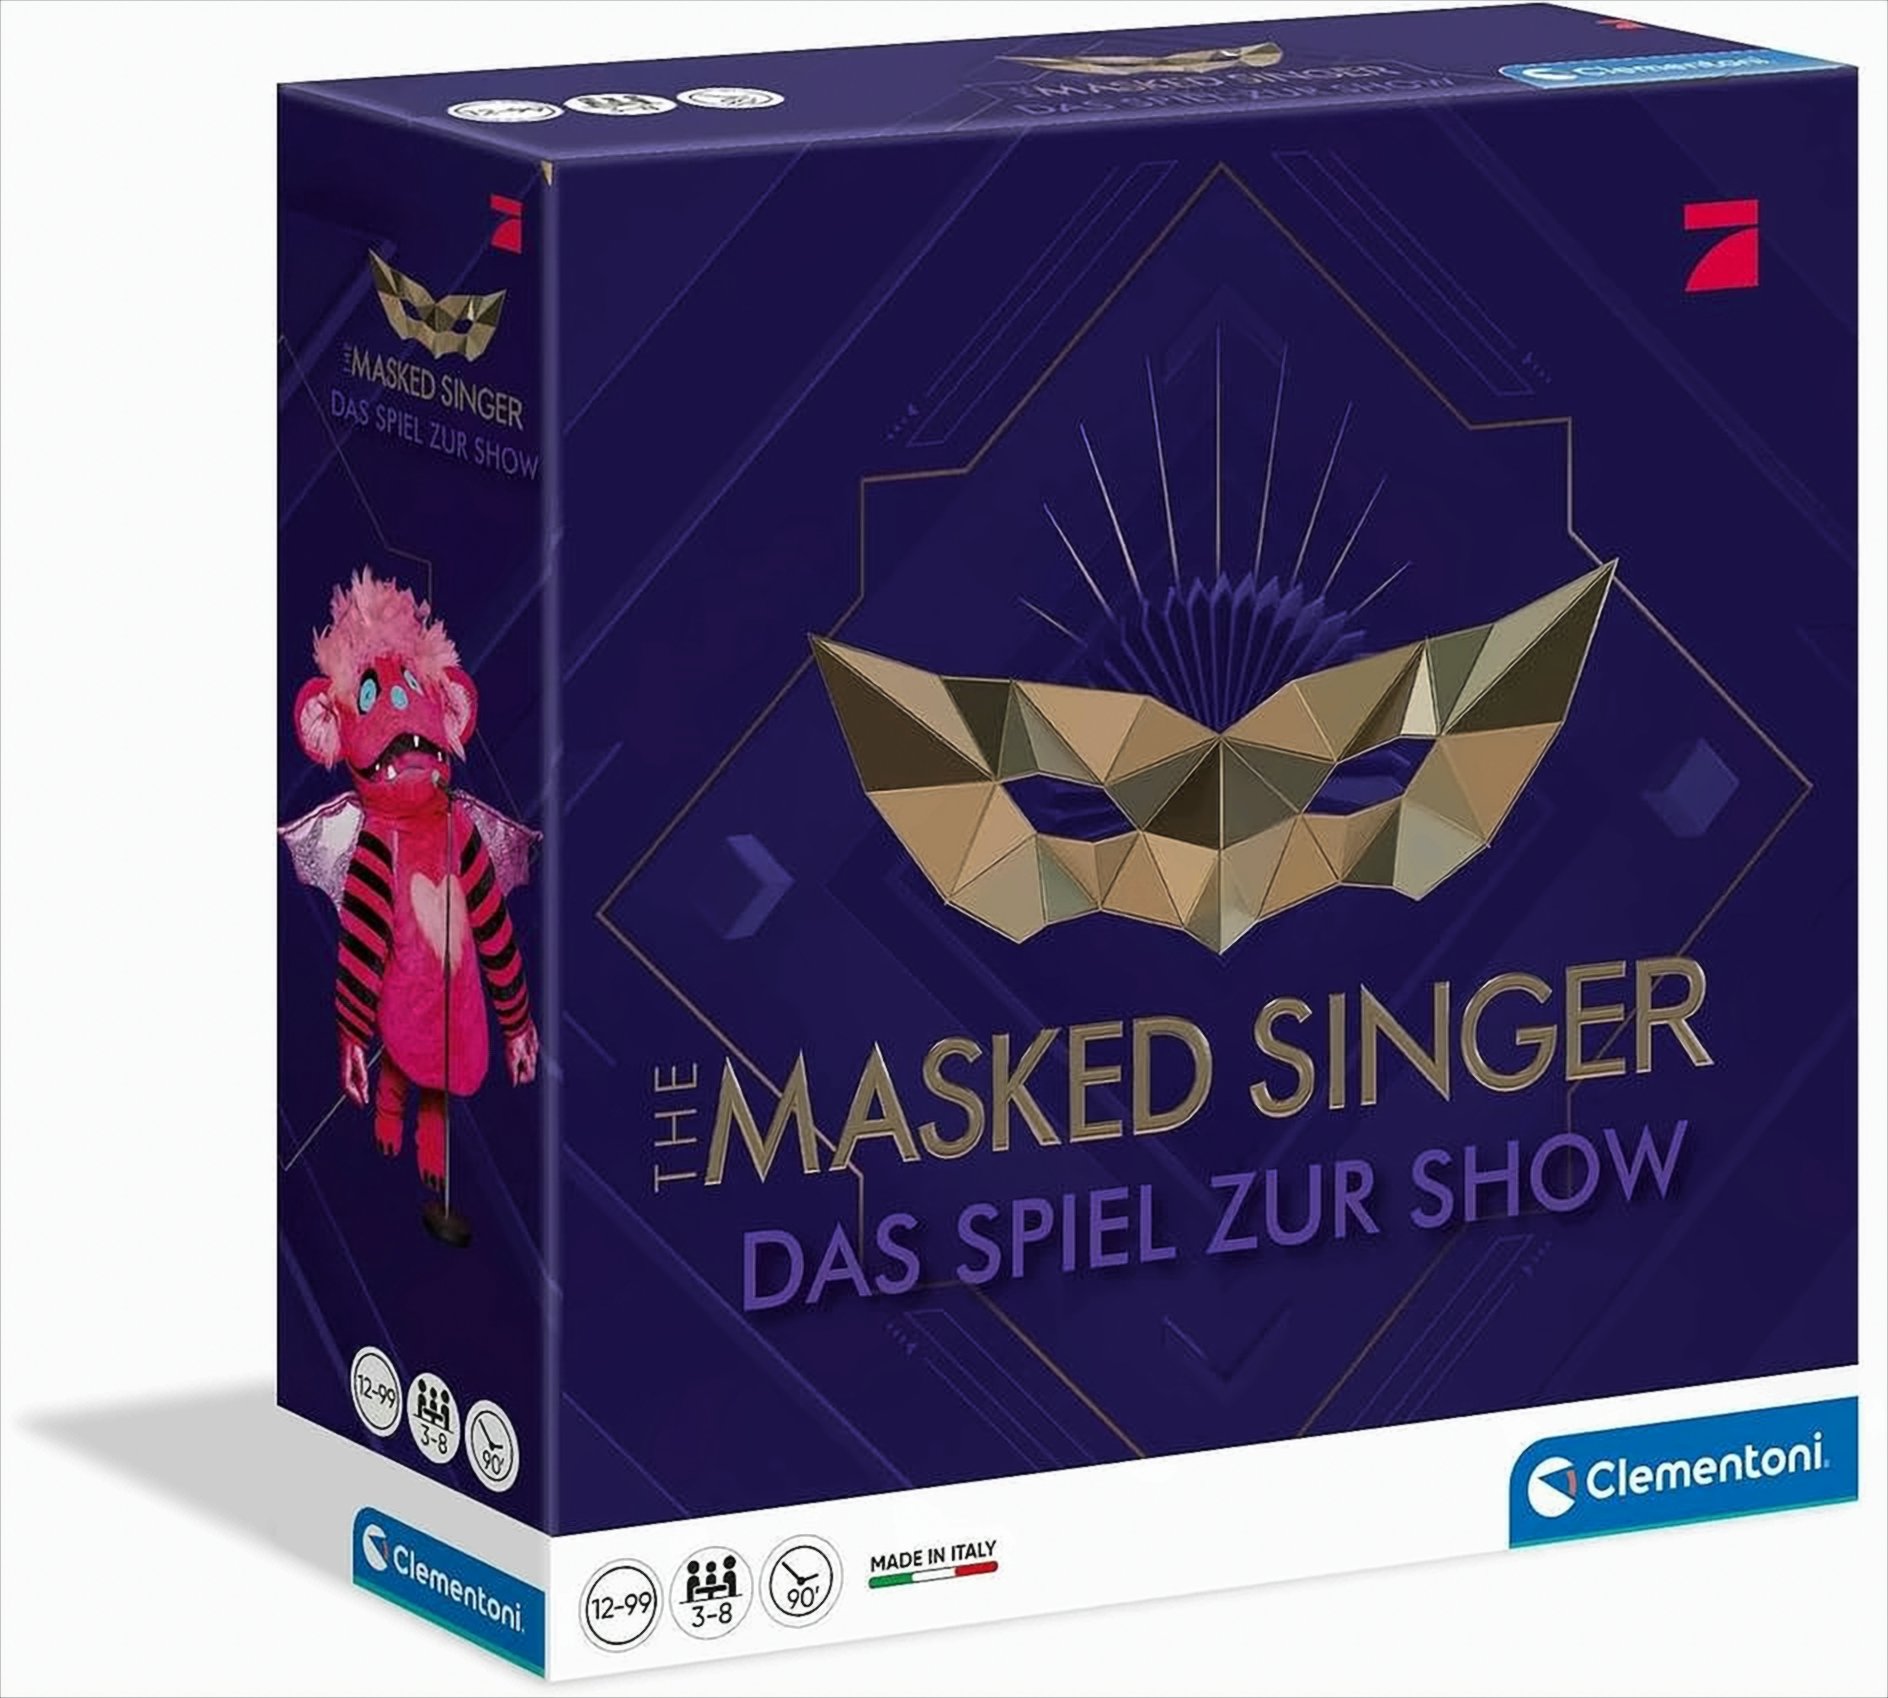 The Masked Singer Das Spiel zur Show von Clementoni